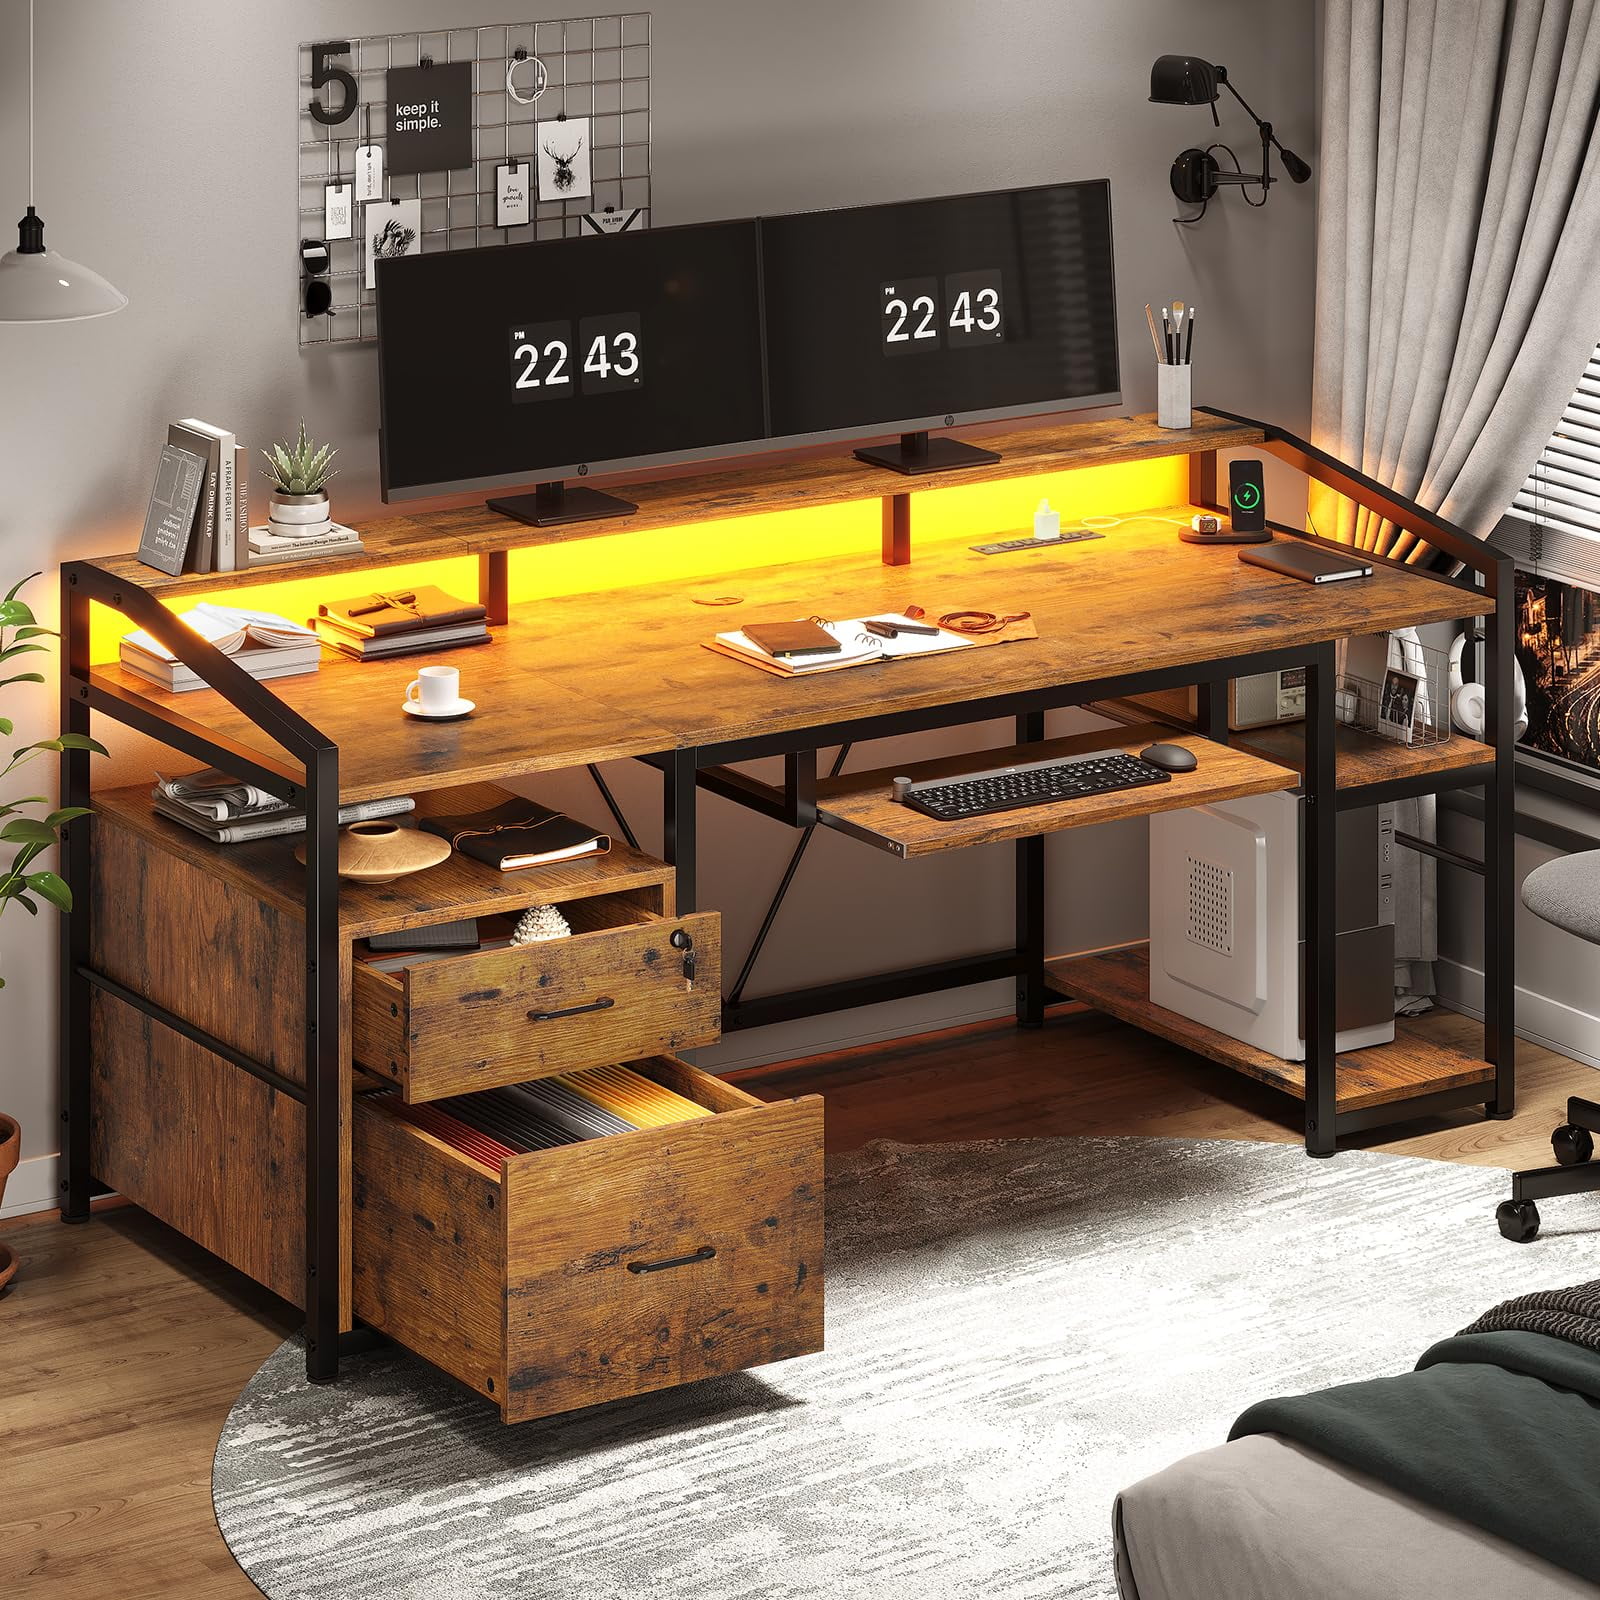 63 Gaming Desks with LED Lights&Power Outlet,Home Office Desks